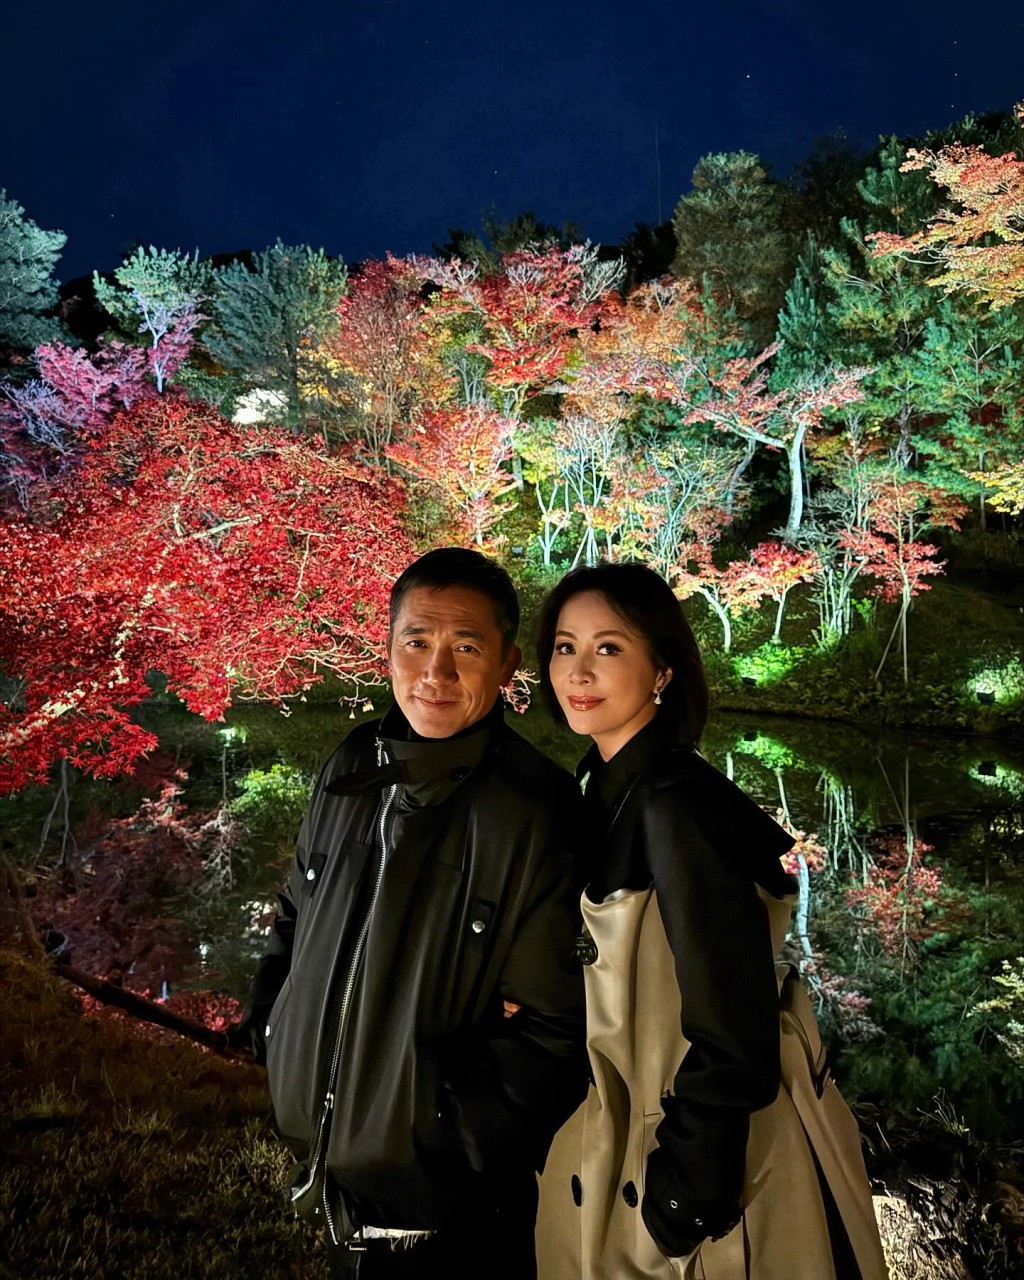 劉嘉玲近日晒出與梁朝偉在日本看秋楓的照片。